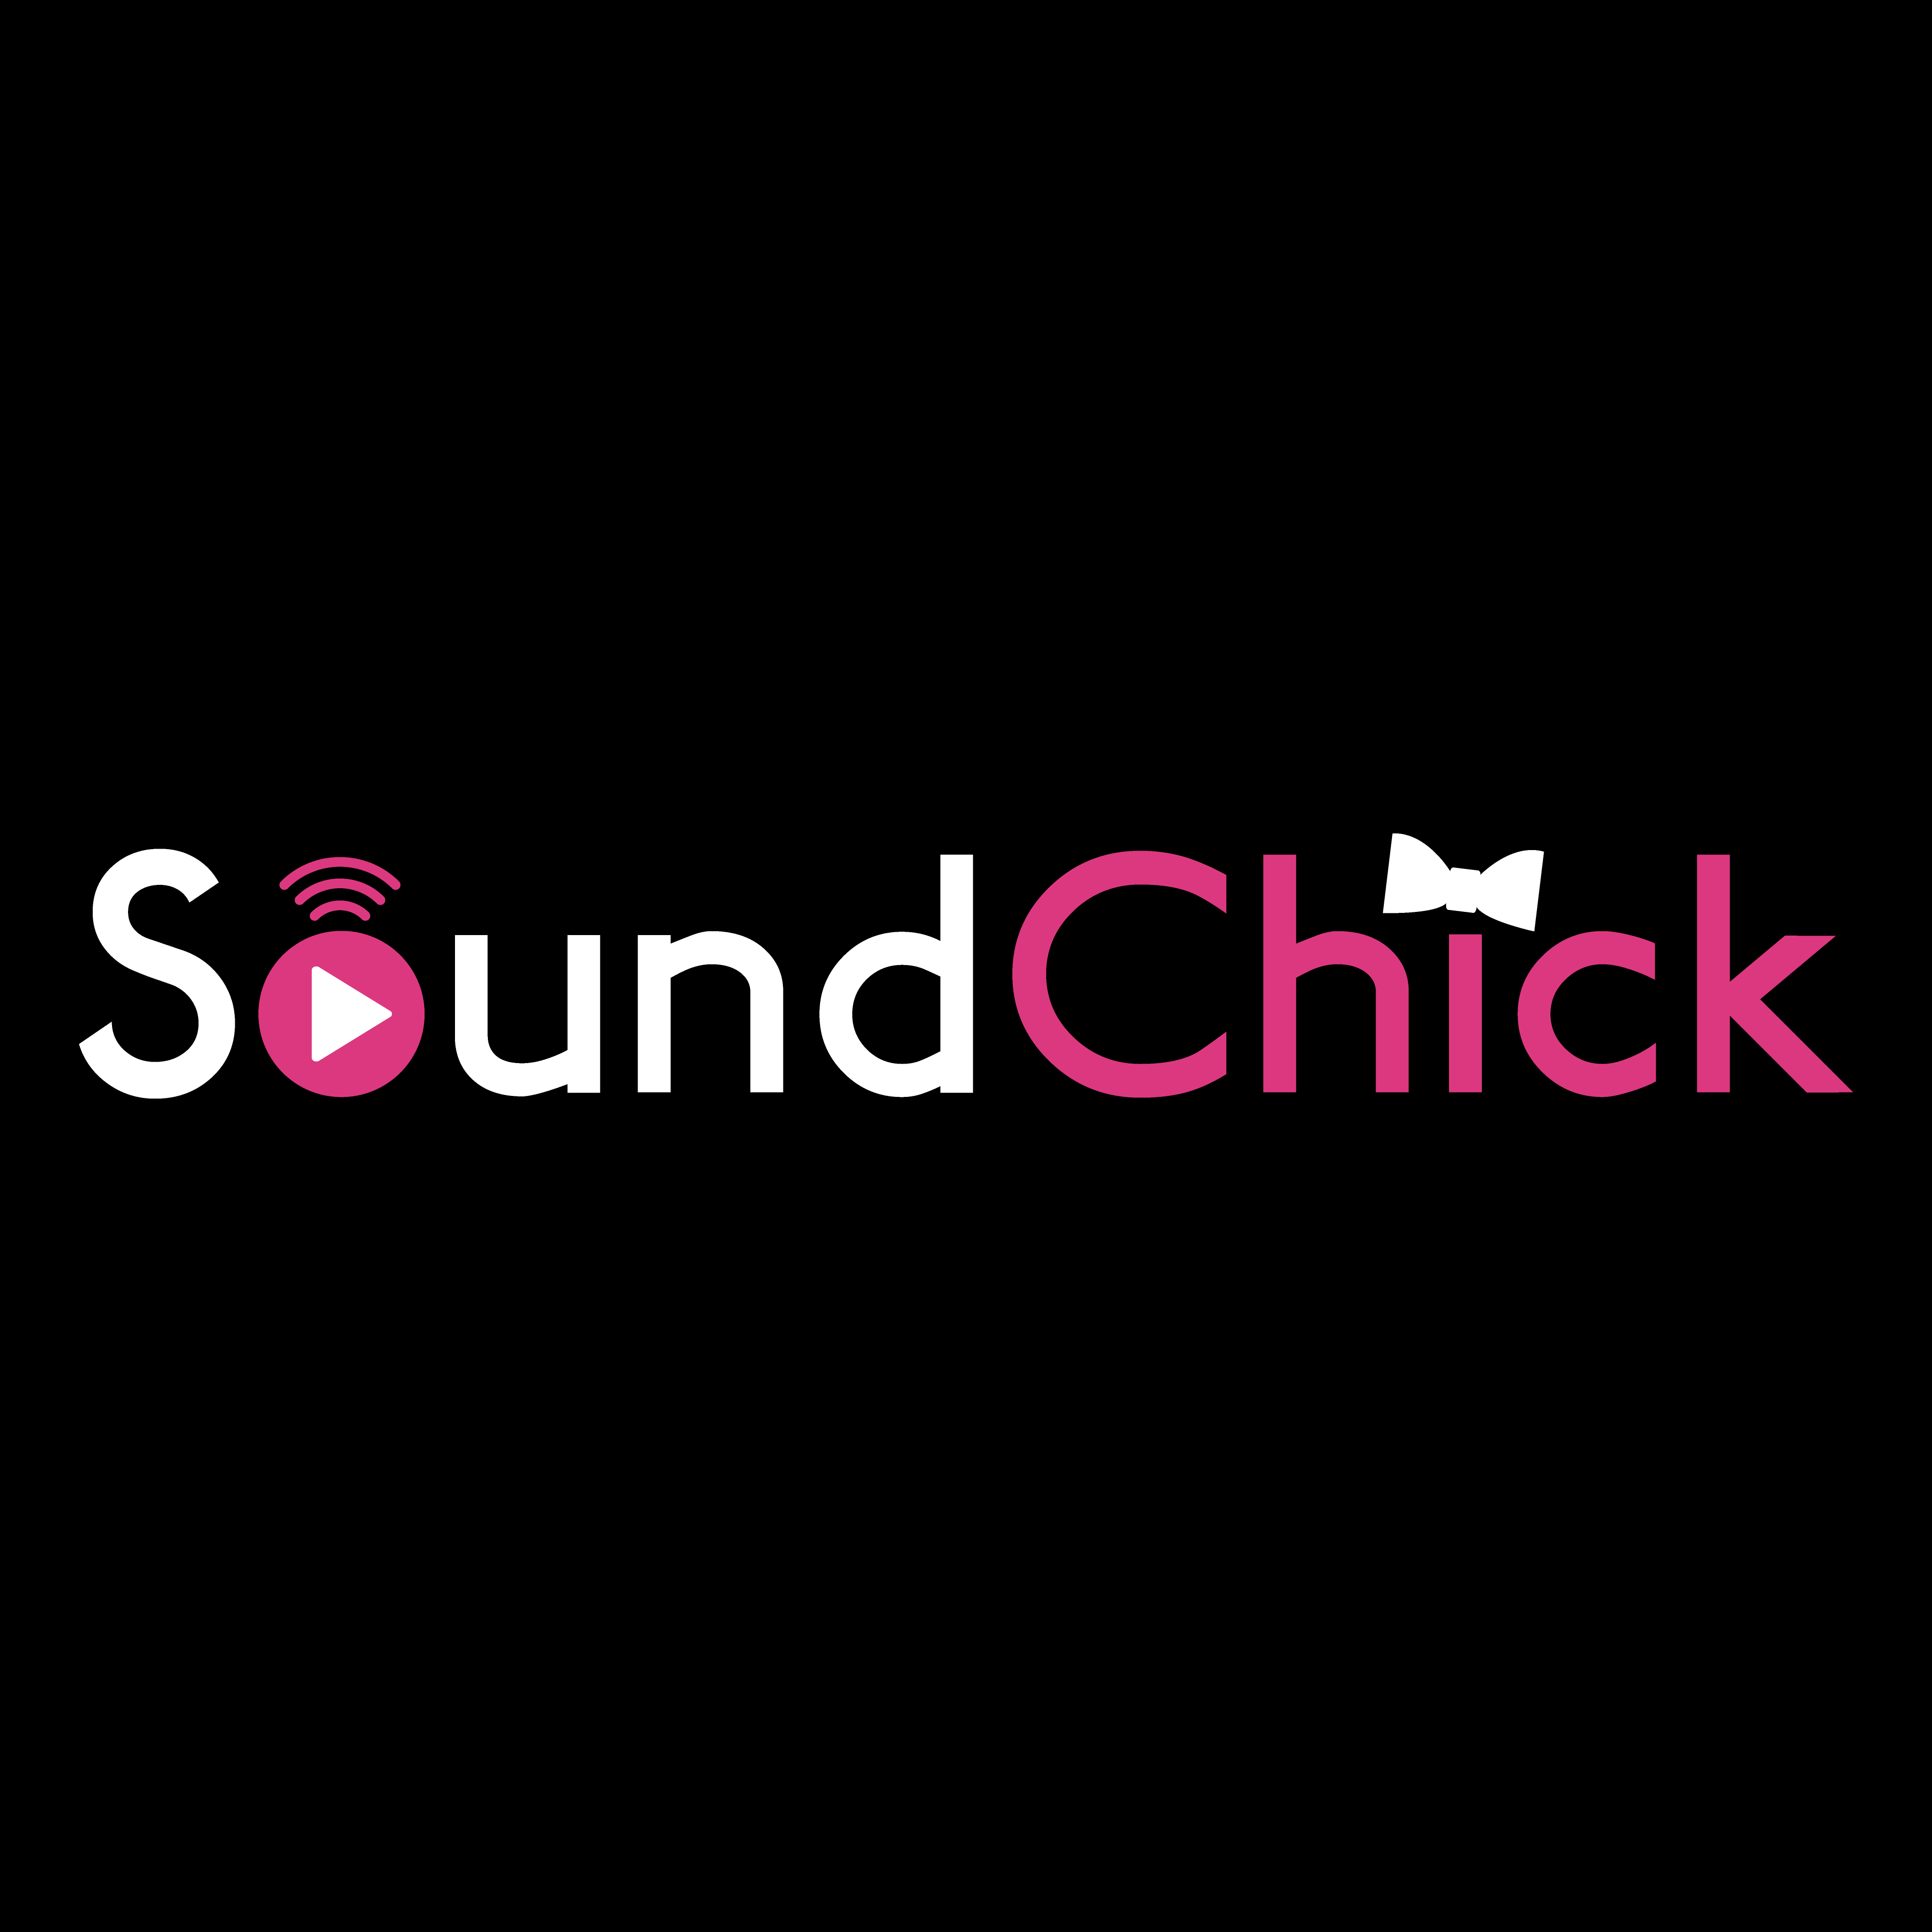 SoundChick